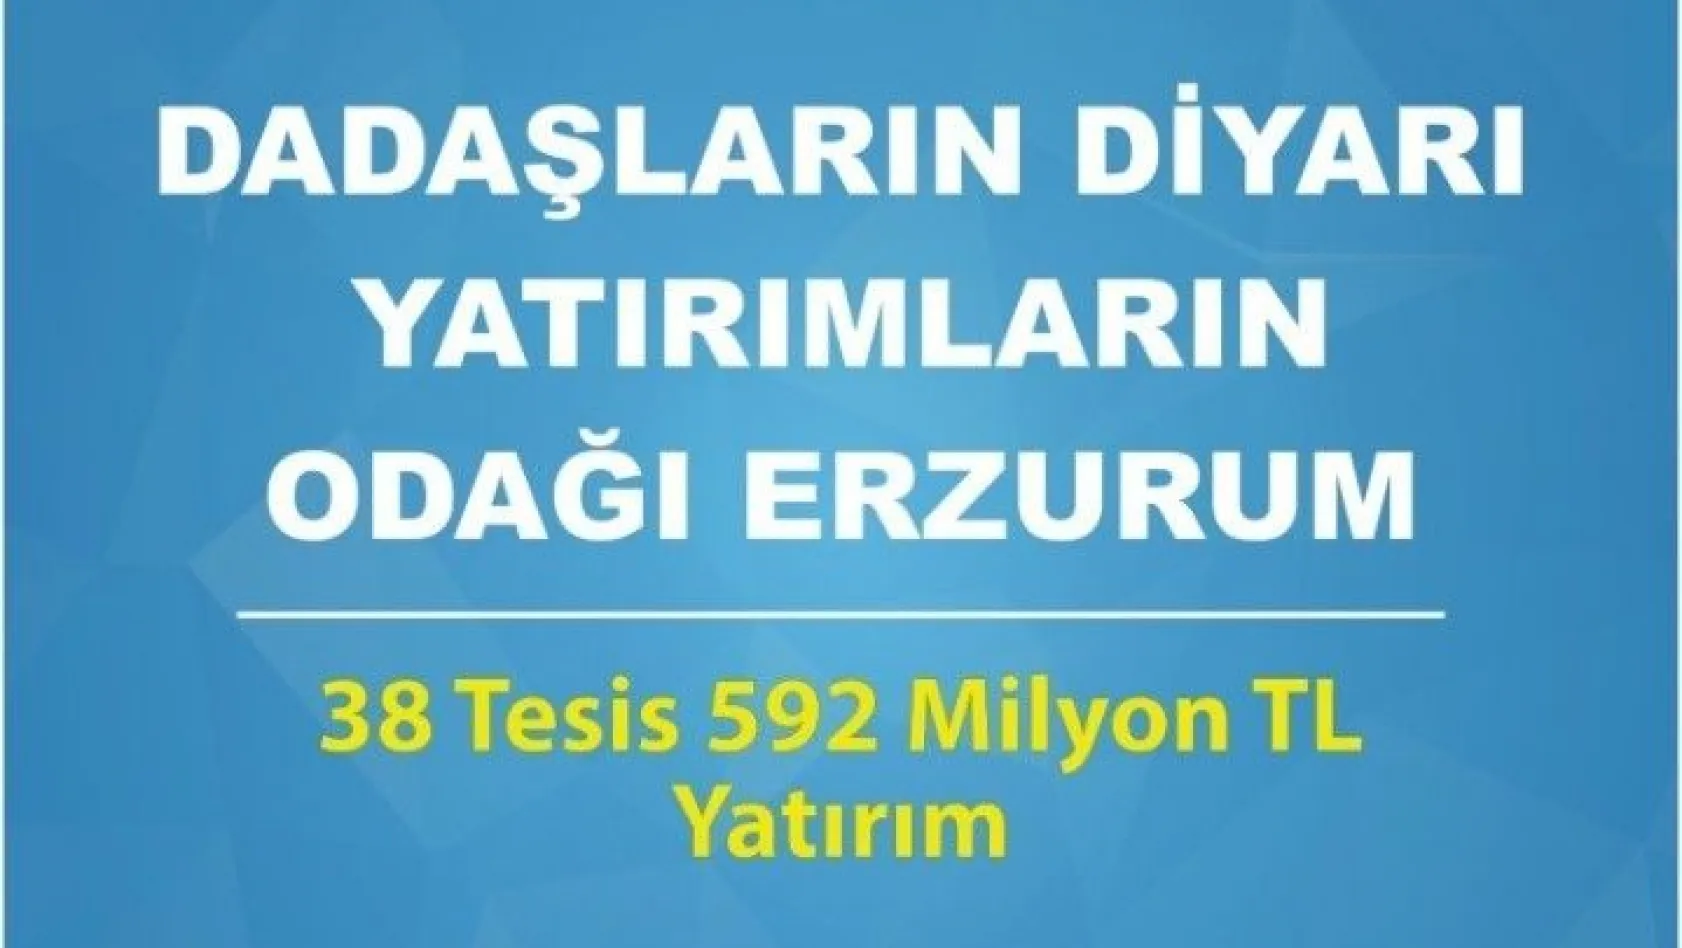 Erzurum'a 38 tesis kazandırılıyor
